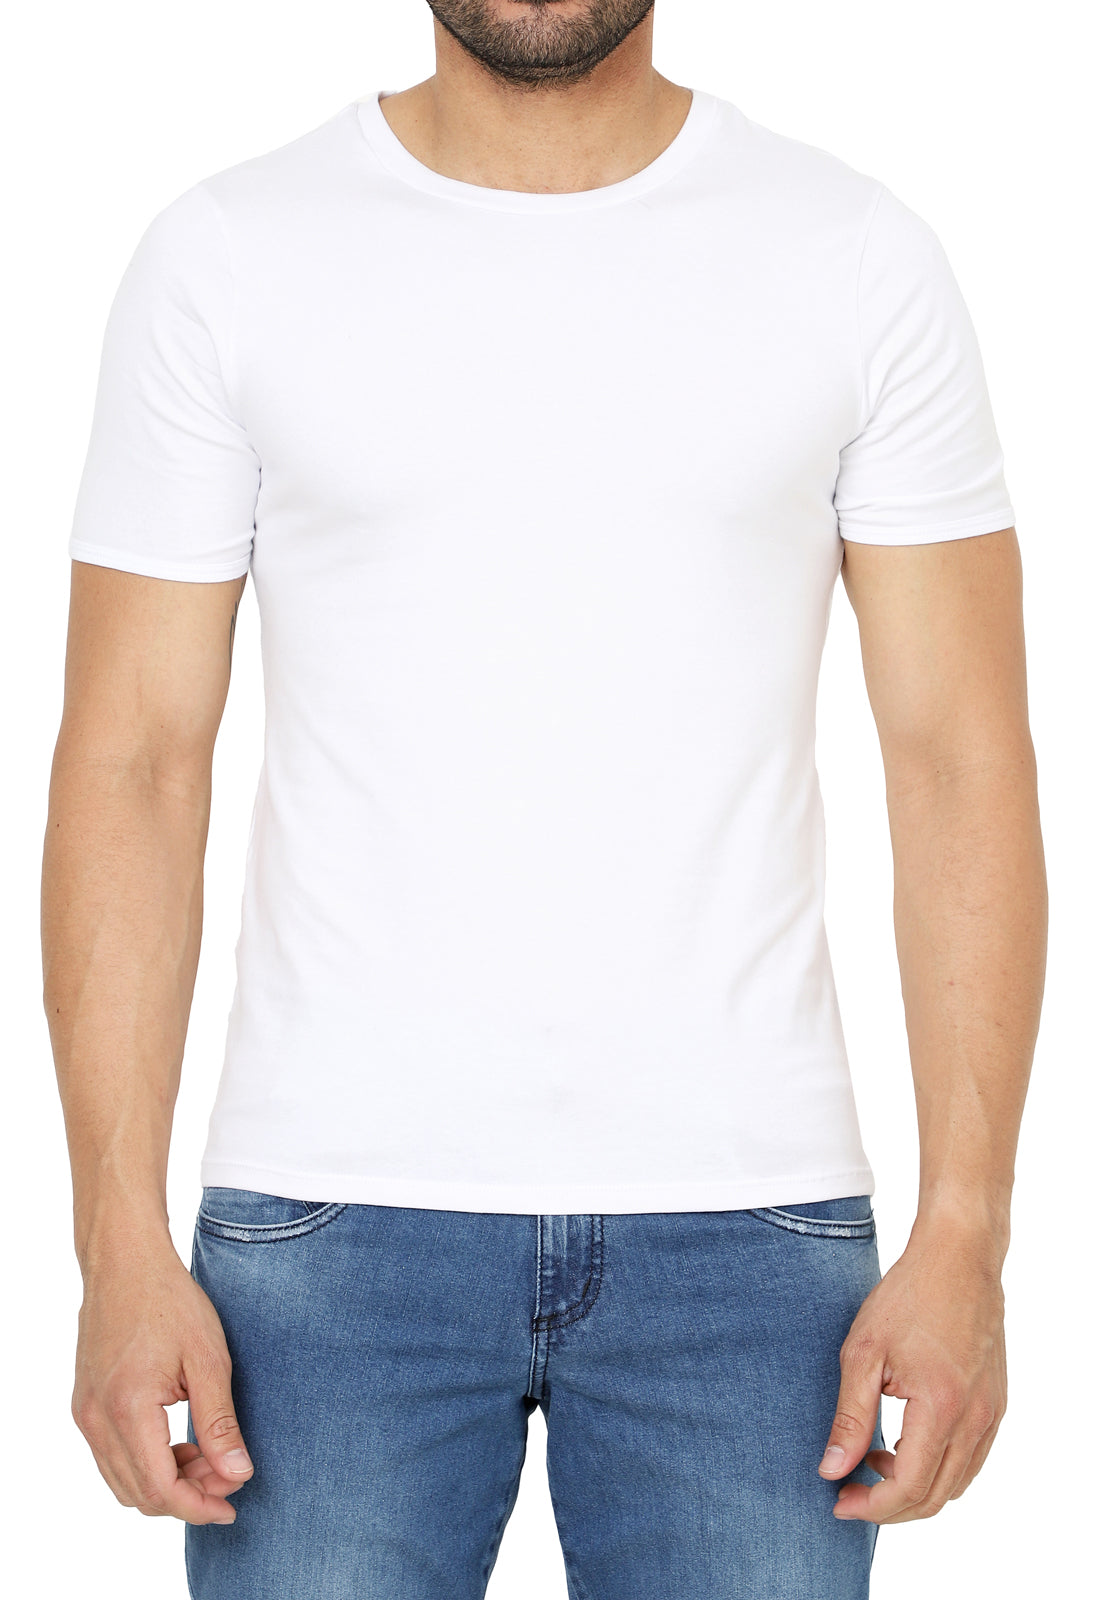 Camisetas Levis de hombre, Camisetas básicas